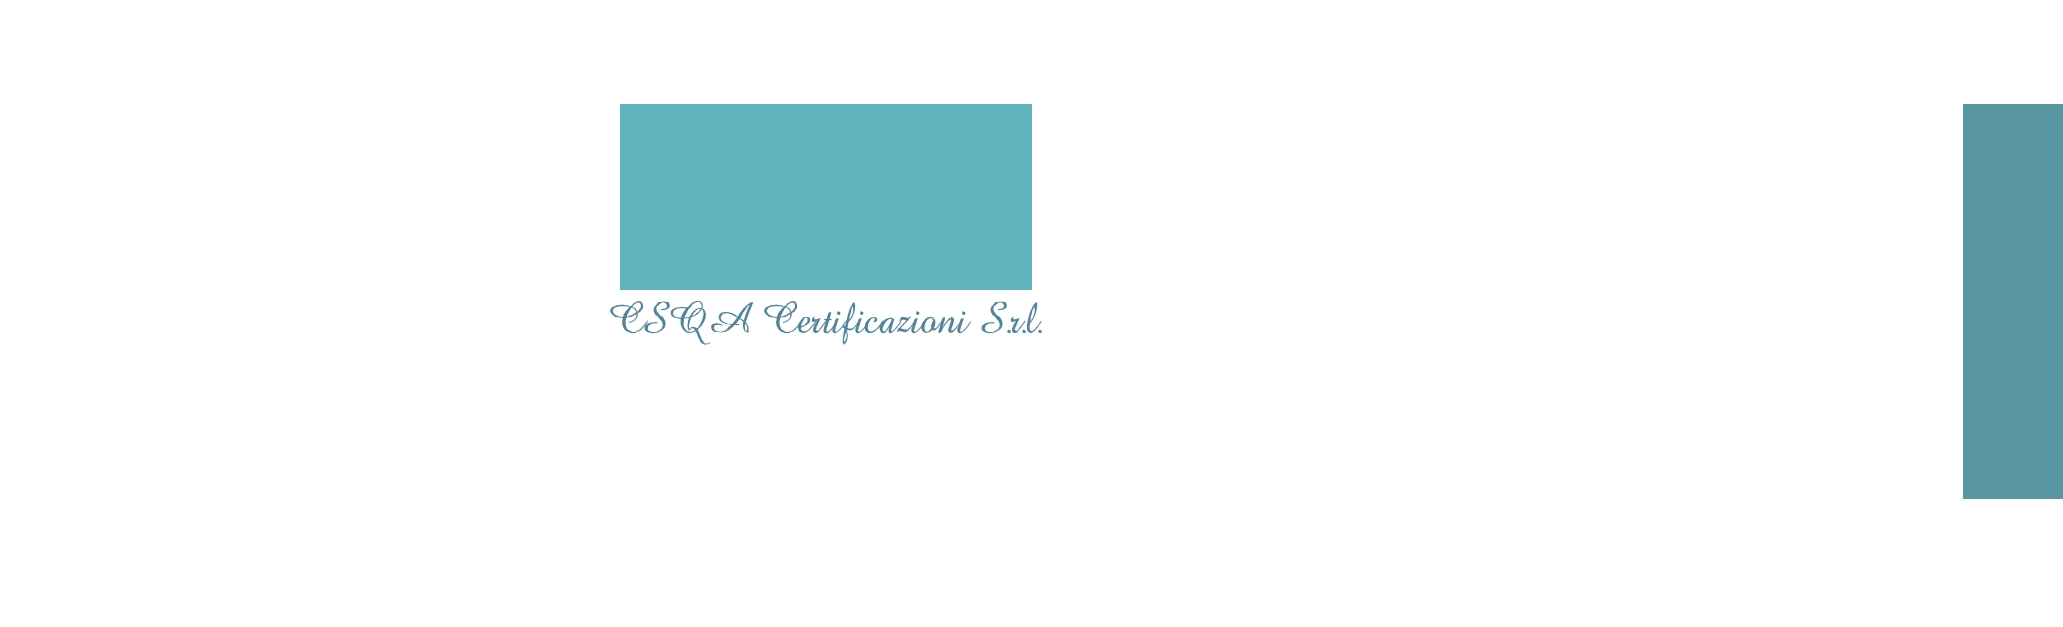 logo CSQA Certificazioni S.r.l.